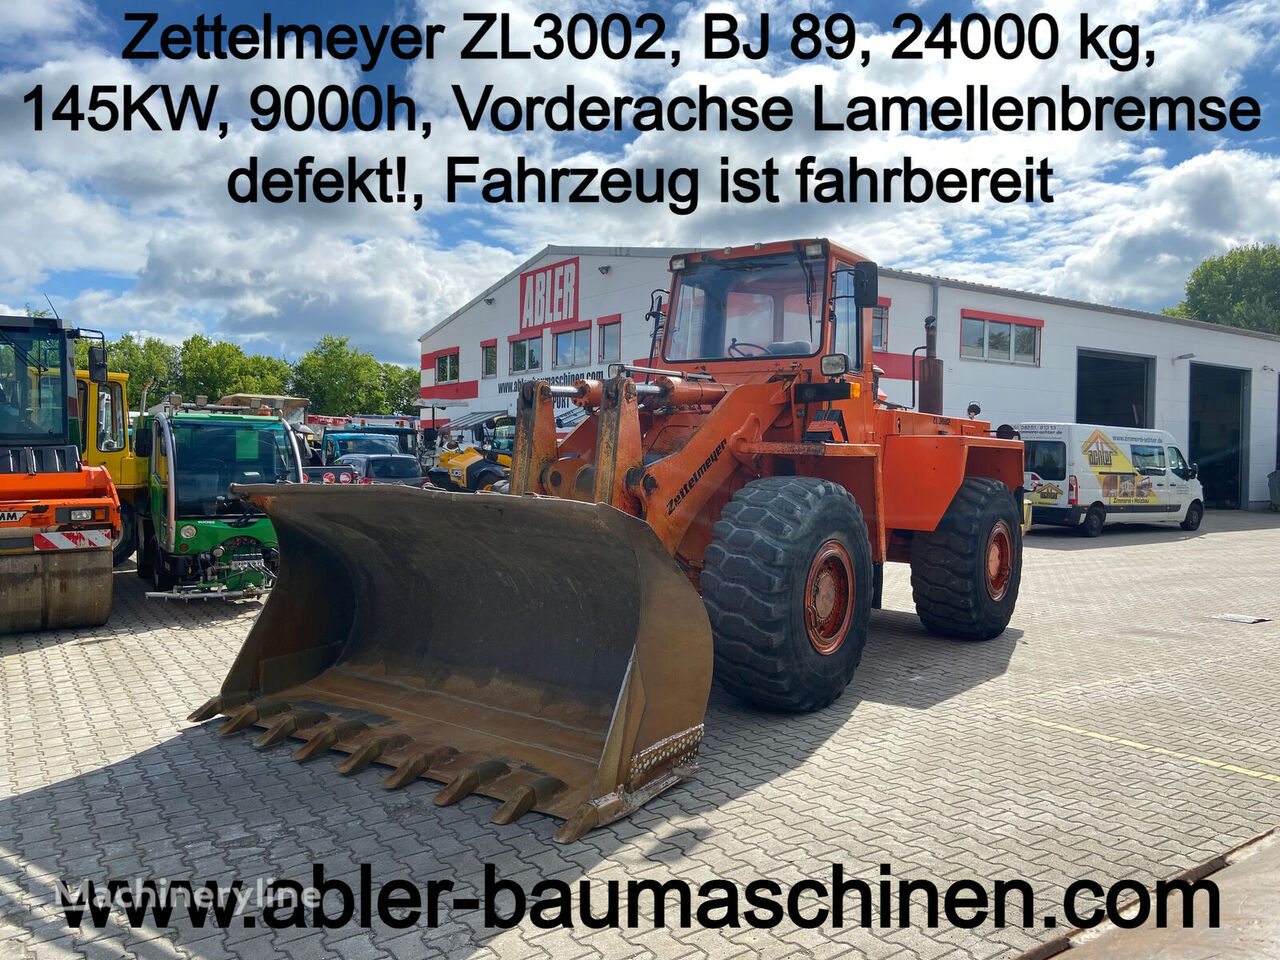 Zettelmeyer ZL 3002 wheel loader